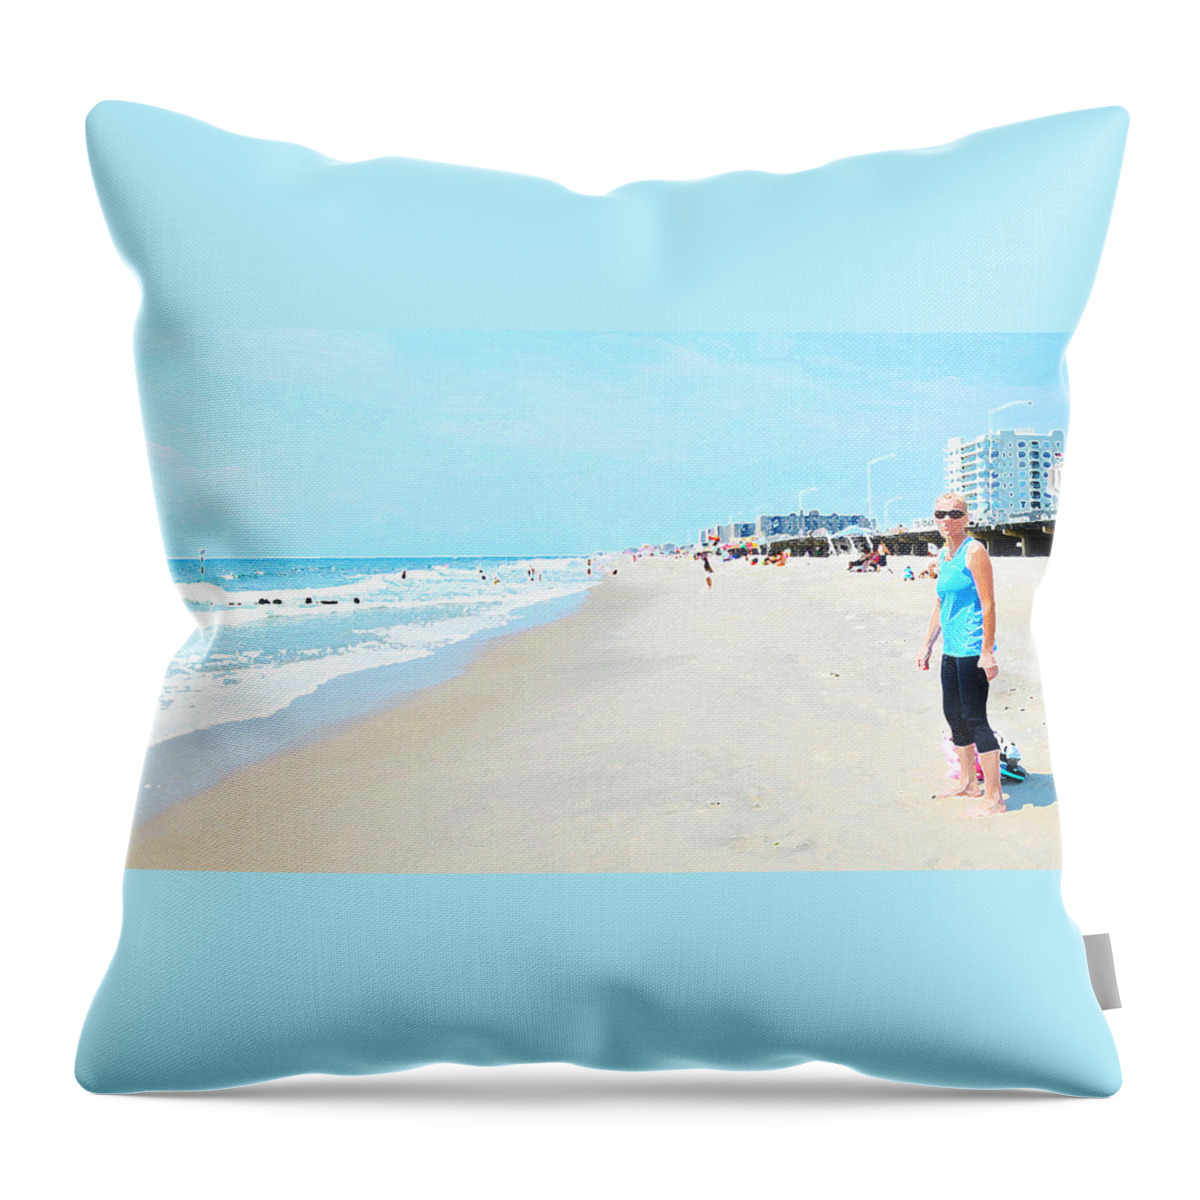 Ocean Throw Pillow featuring the photograph Rockaway Beach Sparkle by Maureen E Ritter